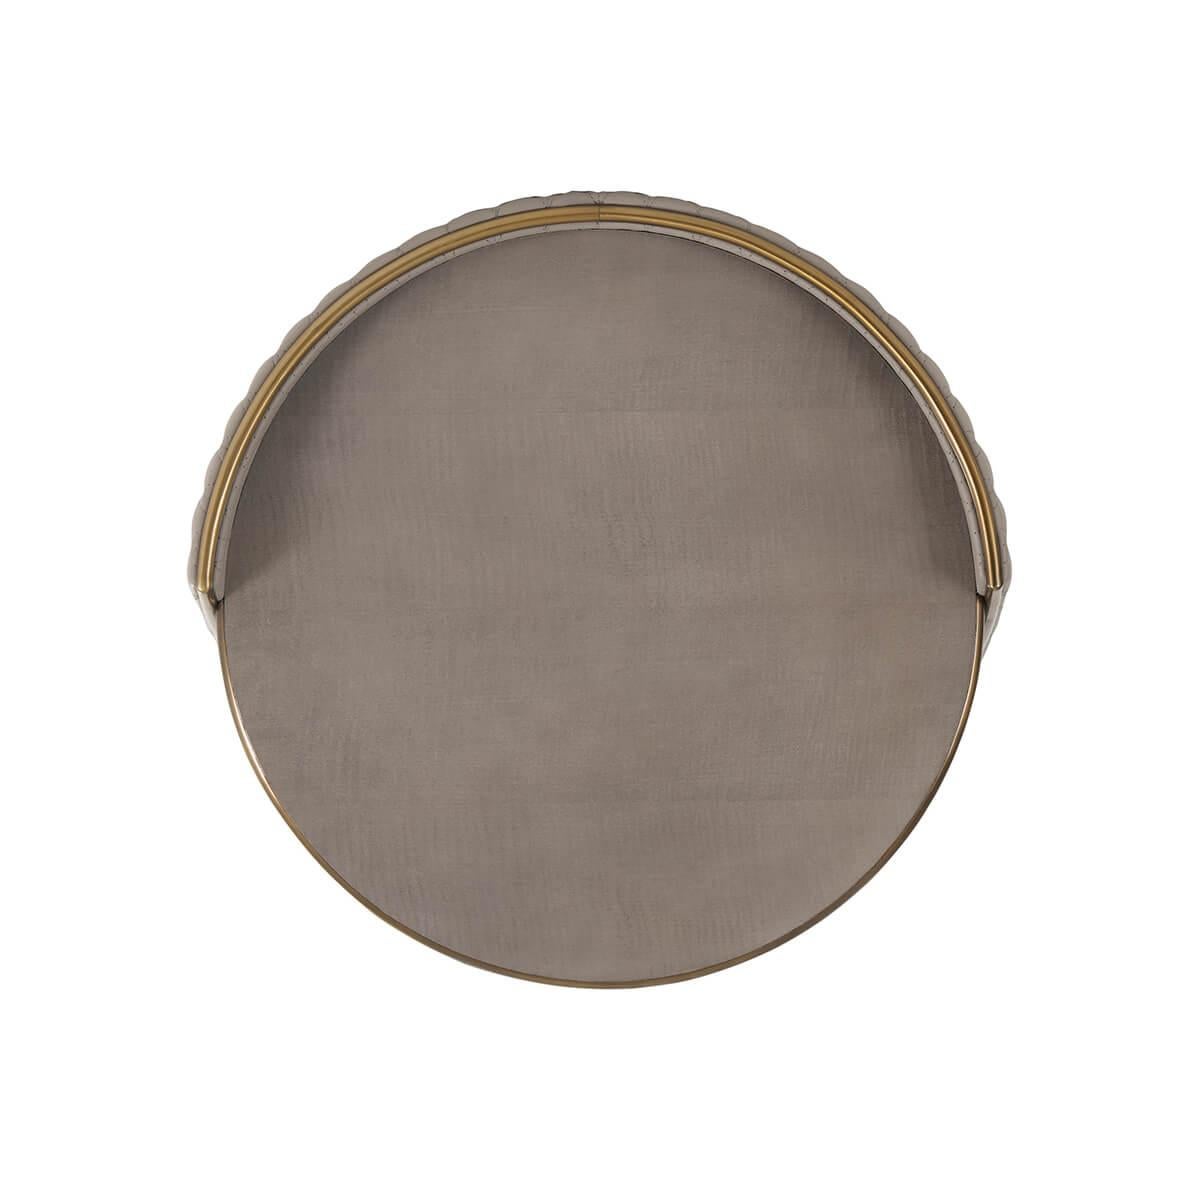 Fabriqué avec un plateau et un dessous en sycomore gris circulaire, orné d'une moulure en finition bronze. Son 